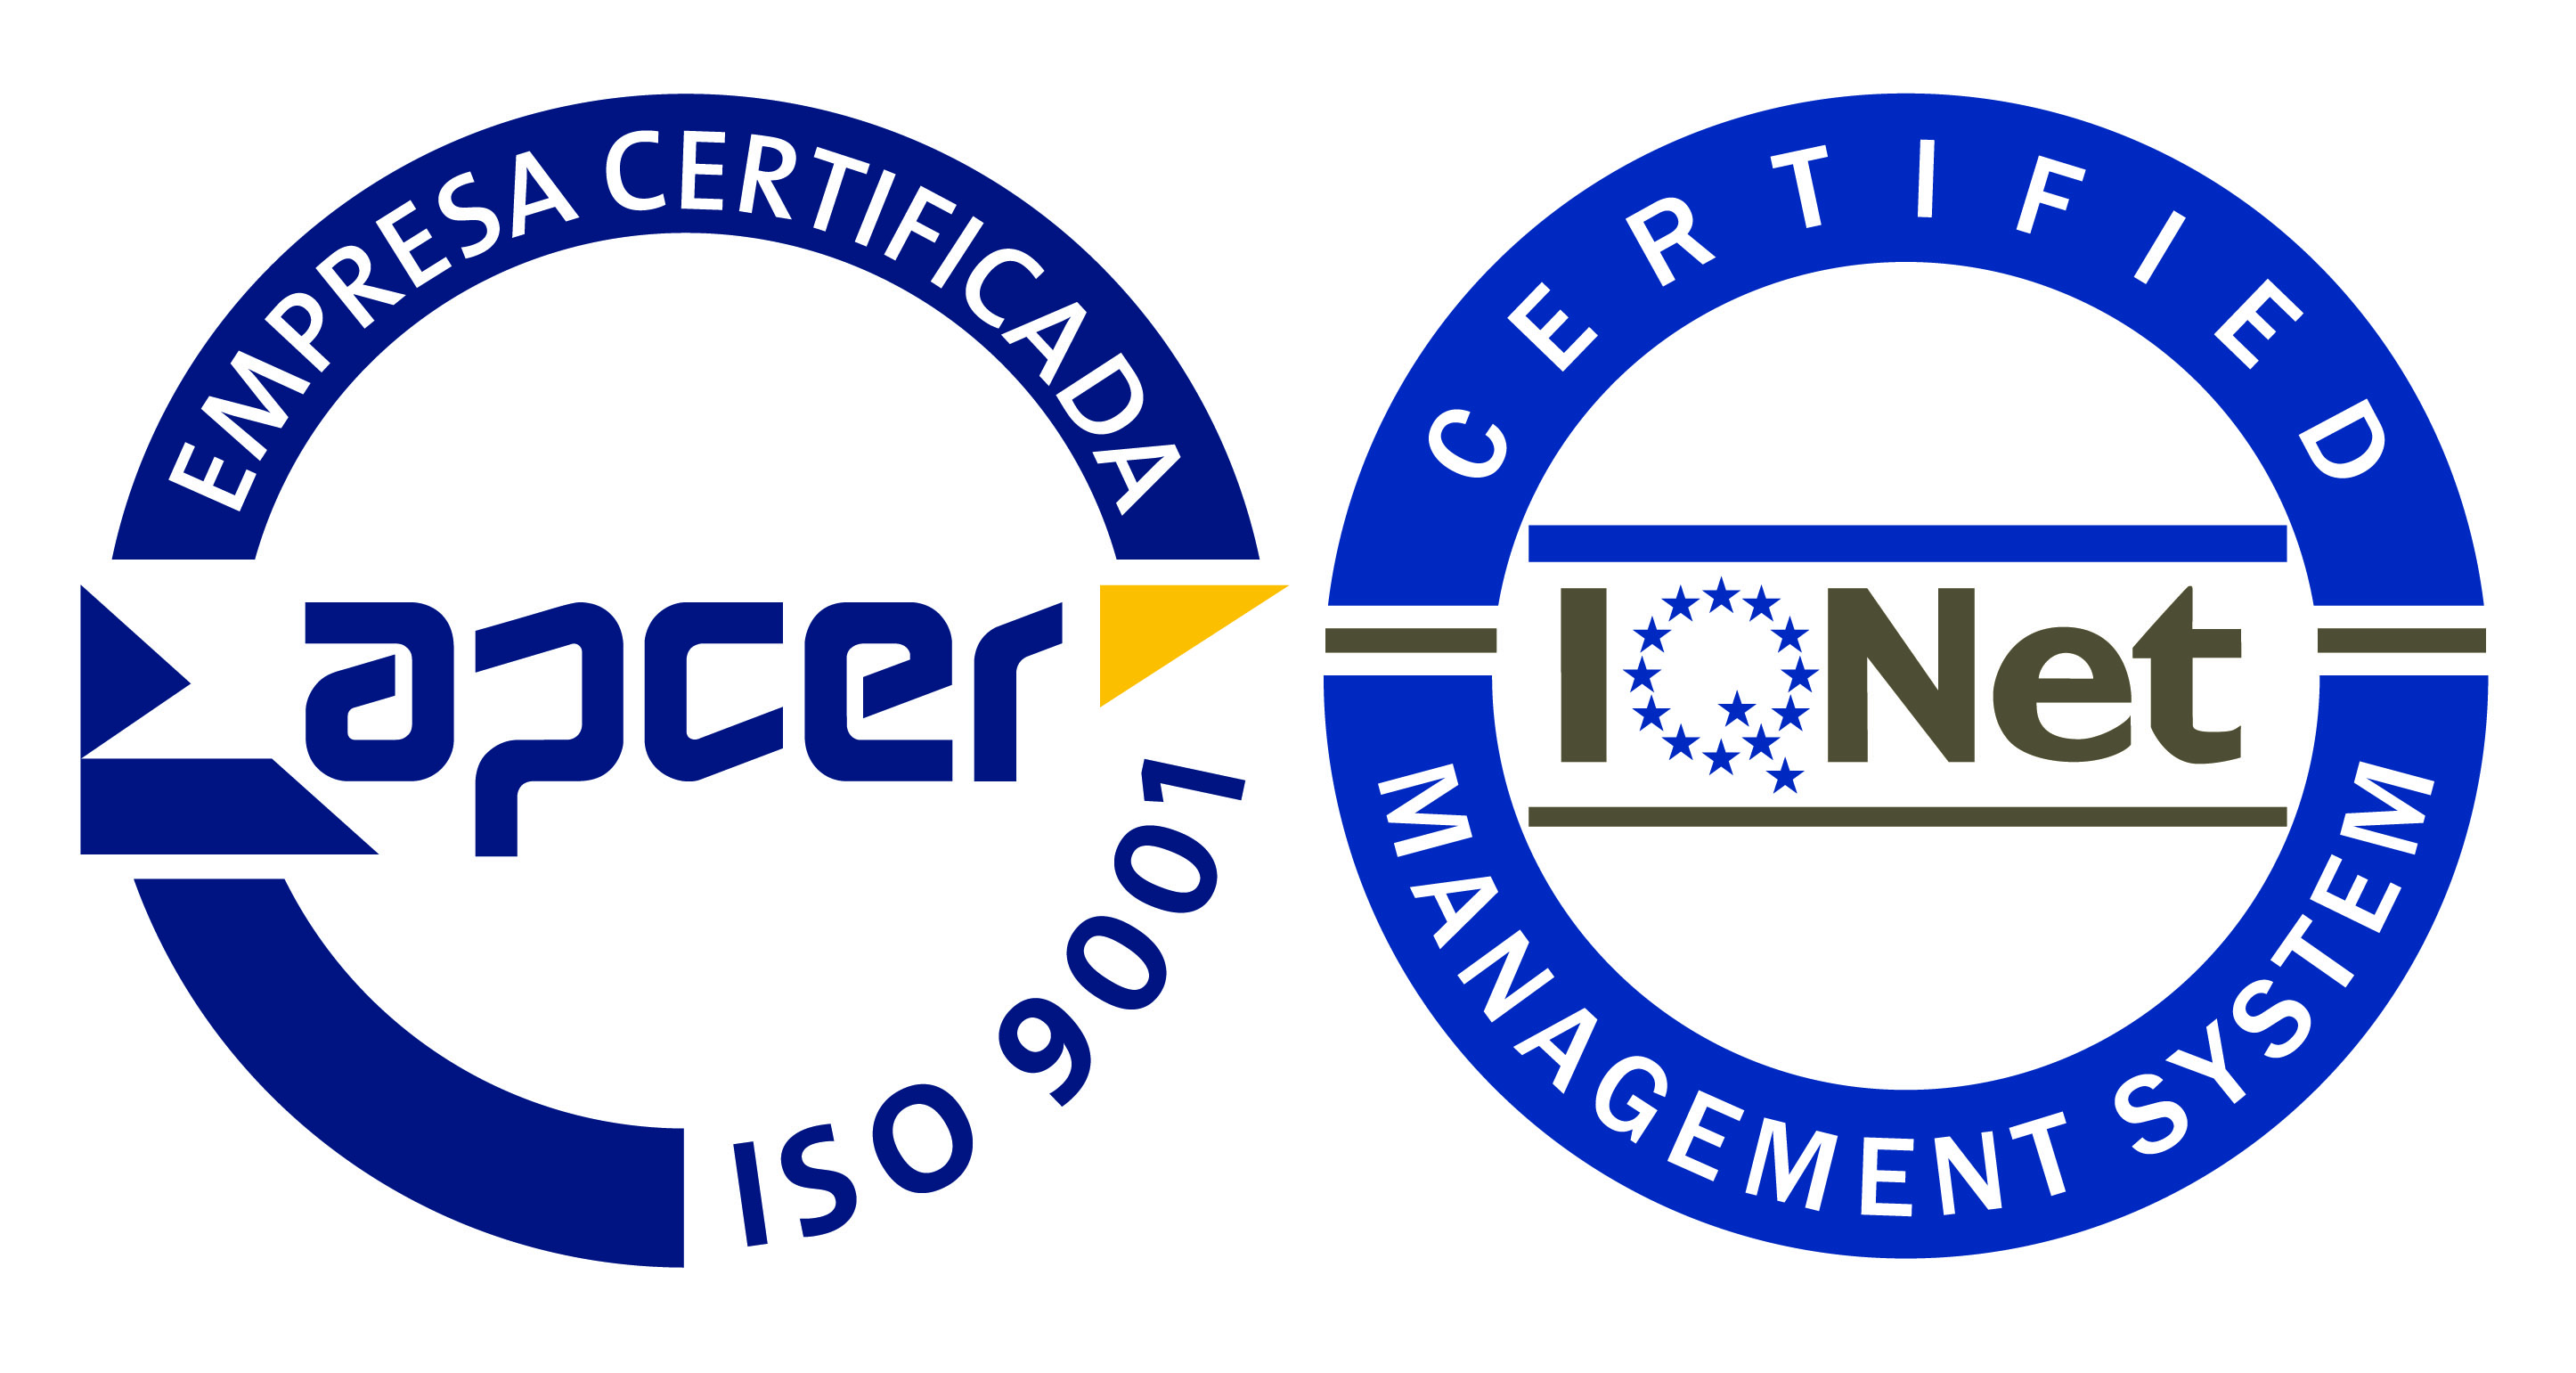 APCER - ISO 9001; Logo of apc